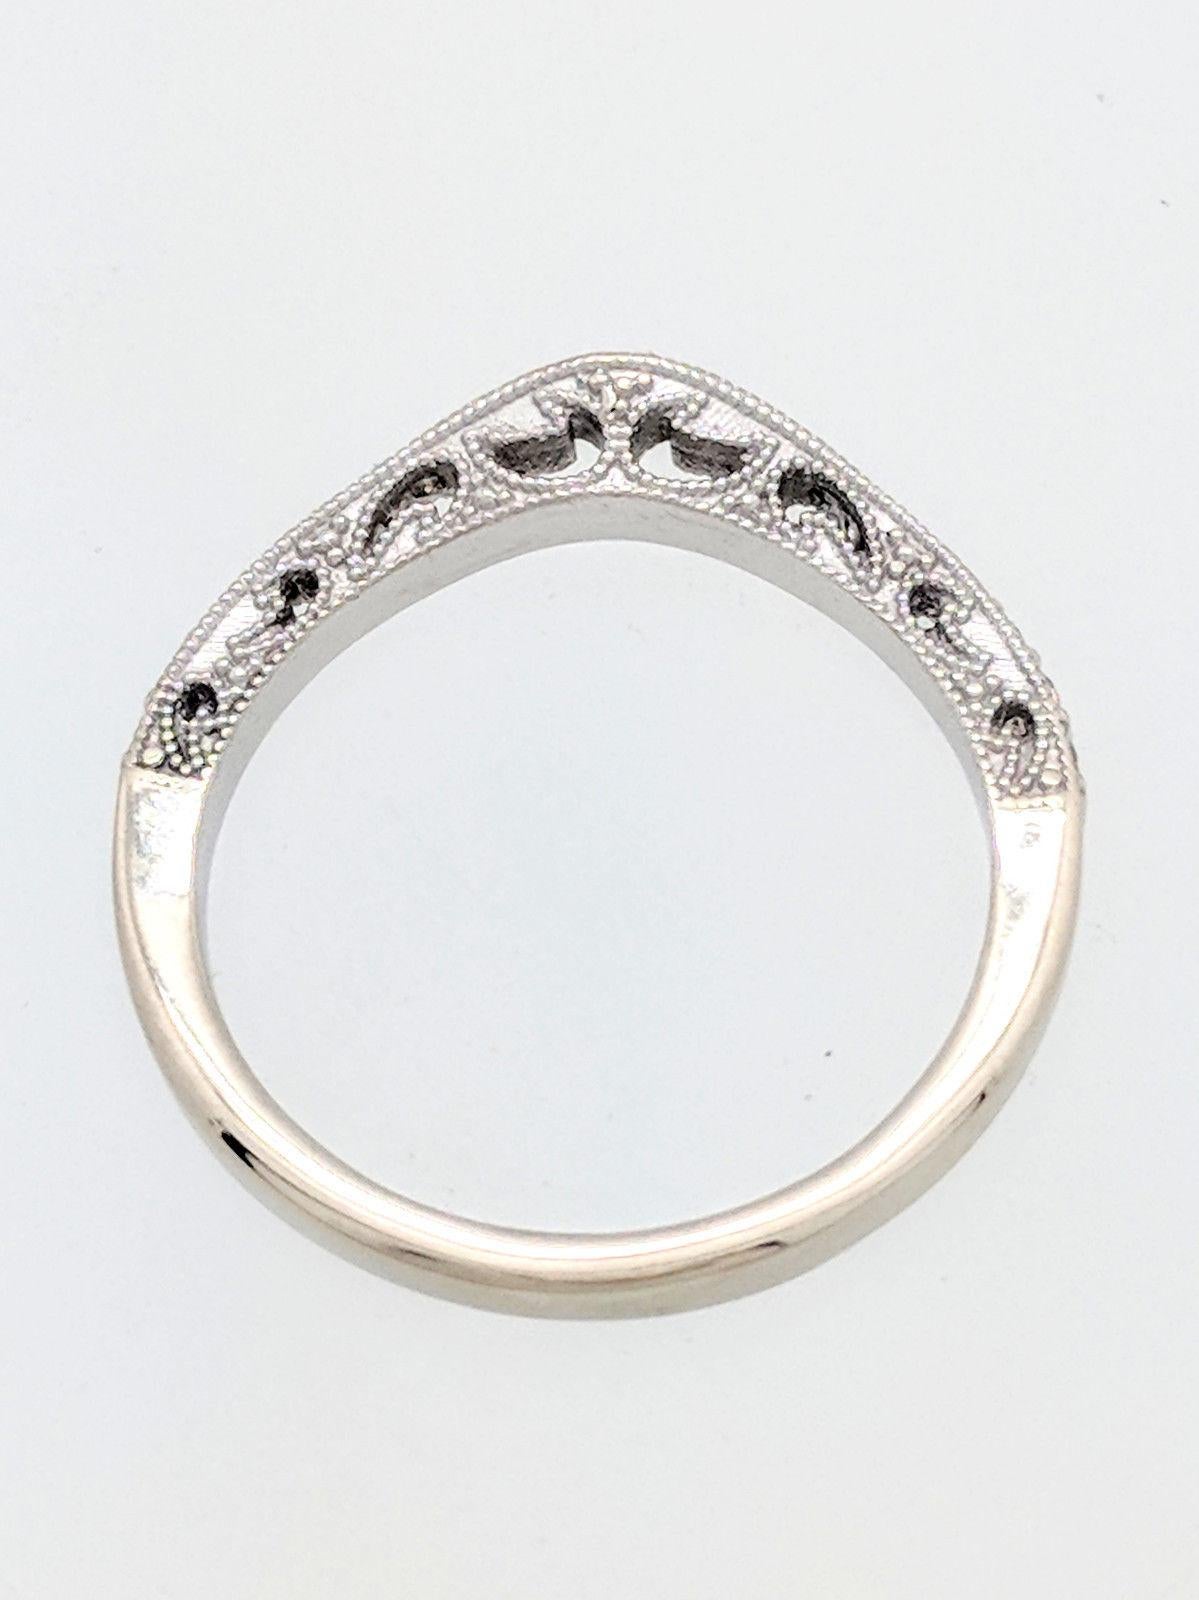 Round Cut 14 Karat White Gold .21 Carat Pave Diamond Curved Wedding Band Ring